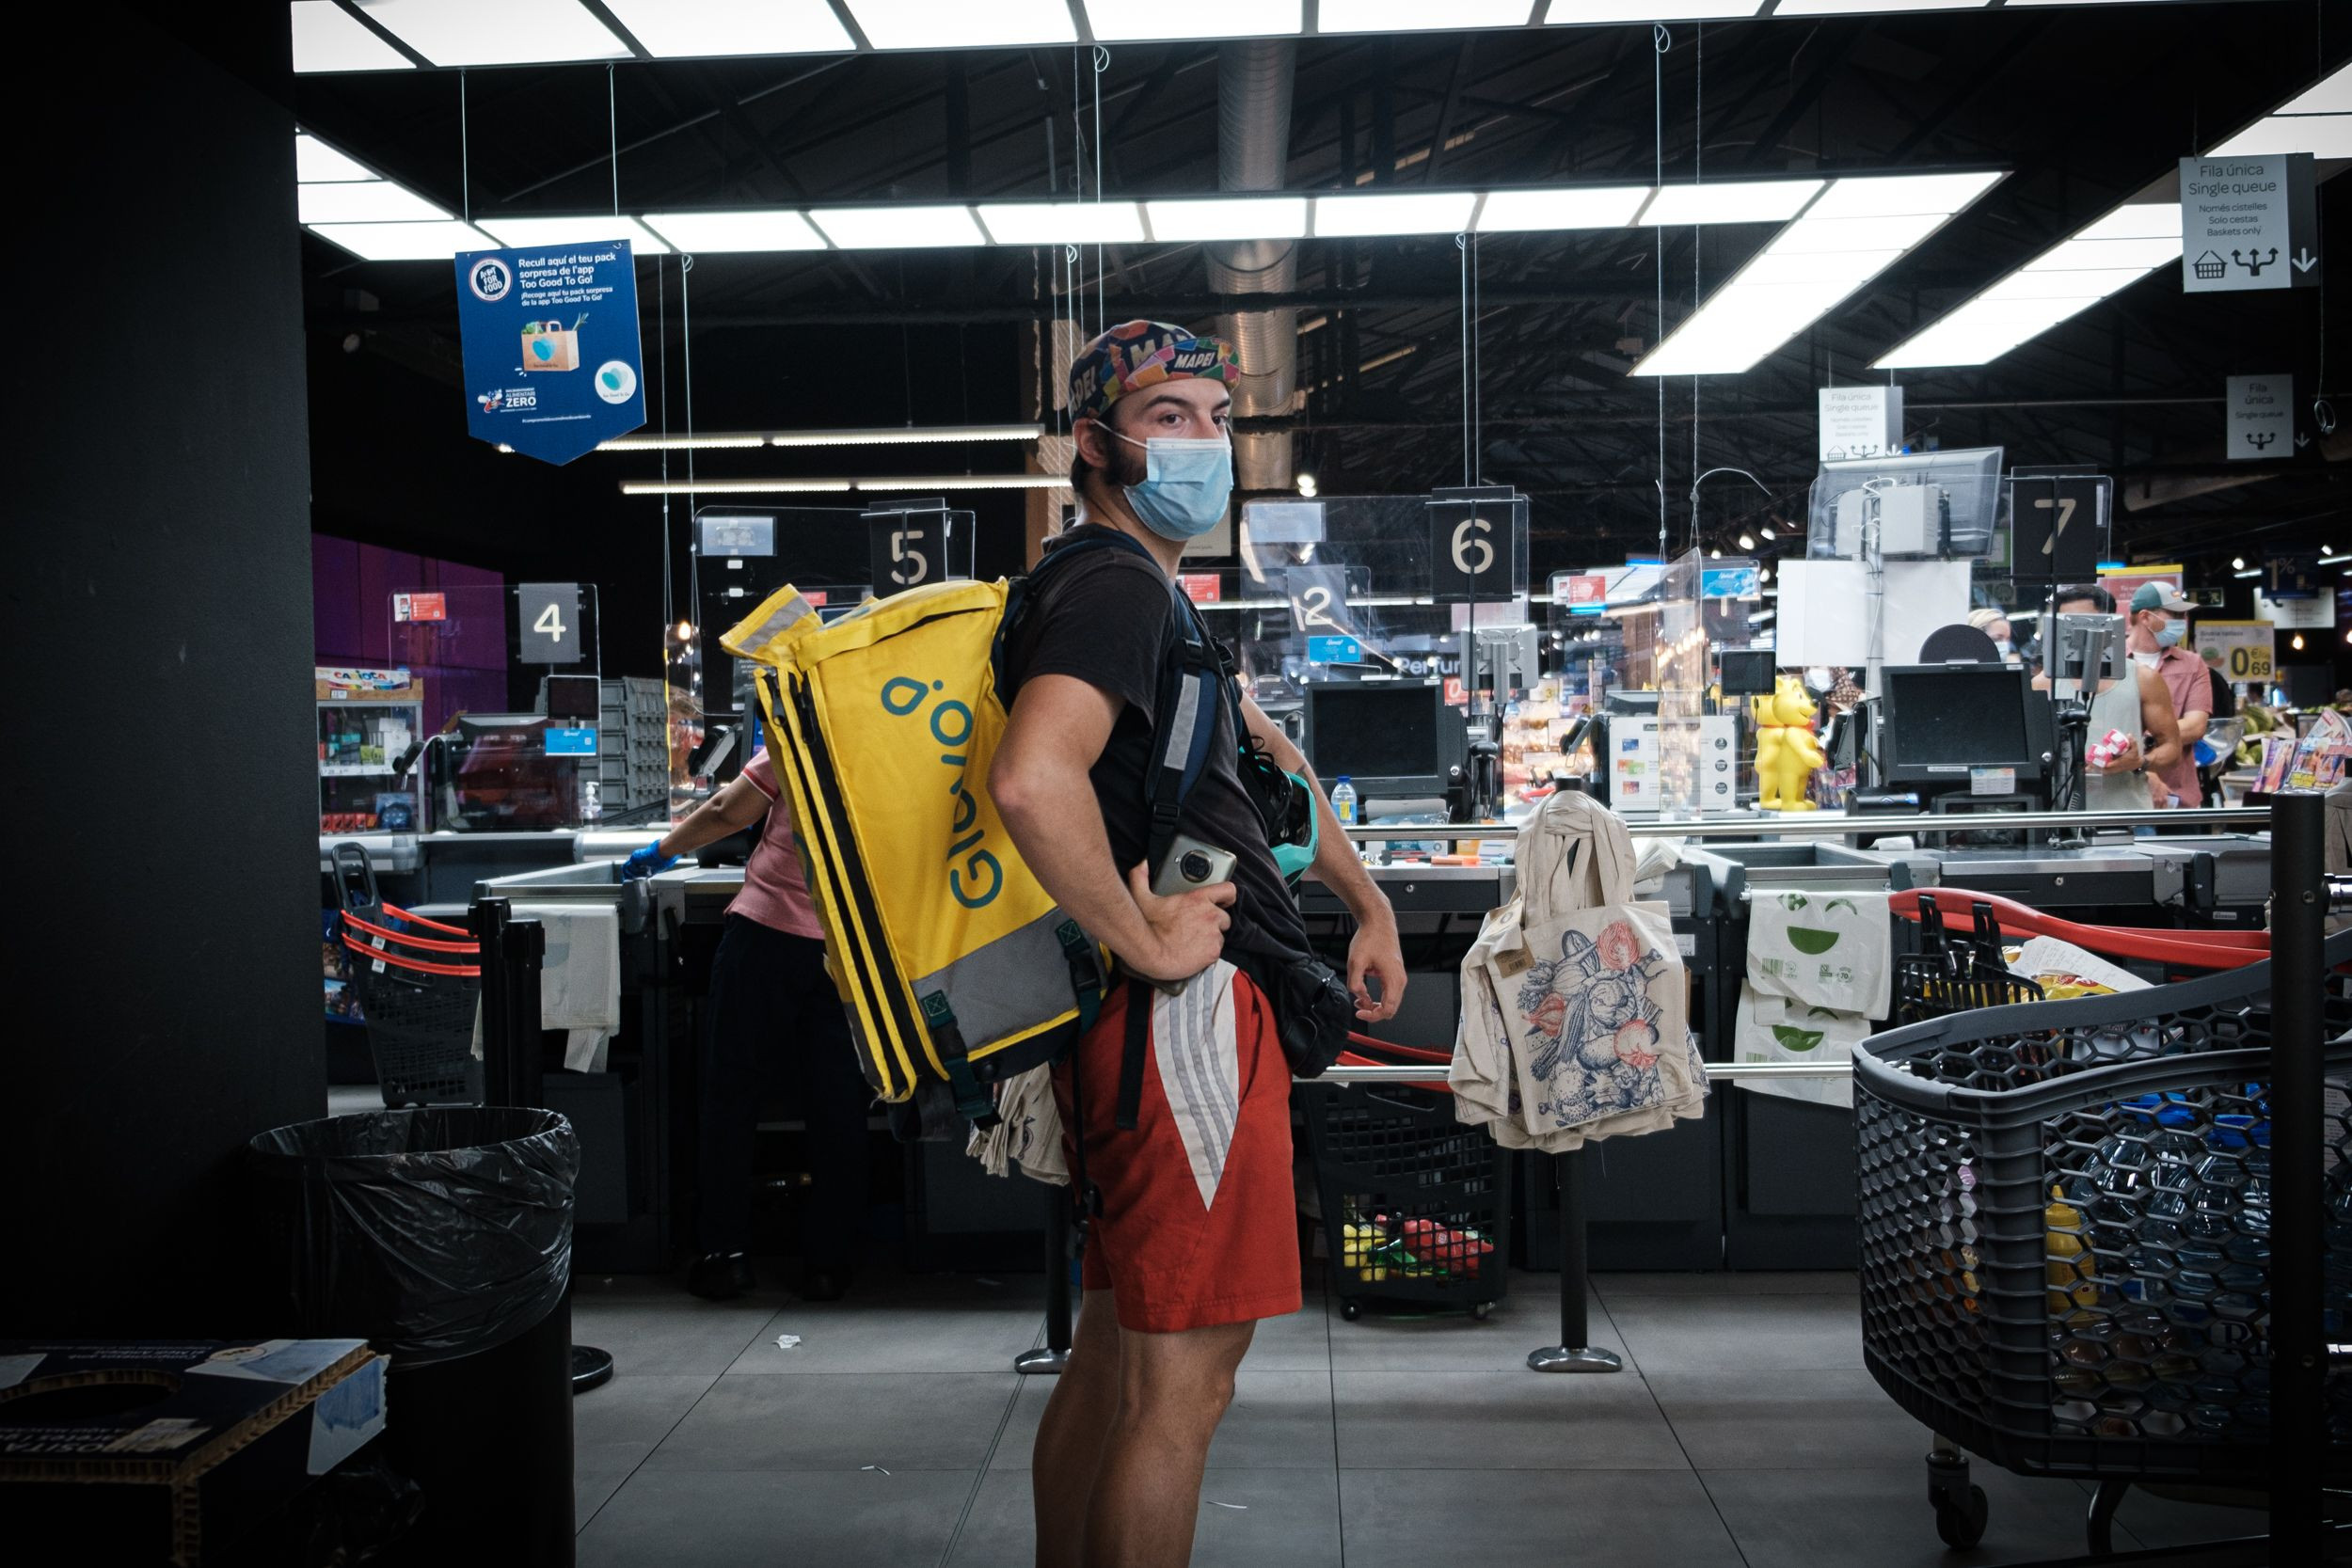 Javier Pérez, 'rider' de Glovo y Uber Eats, espera una compra a domicilio en un supermercado de La Rambla / PABLO MIRANZO